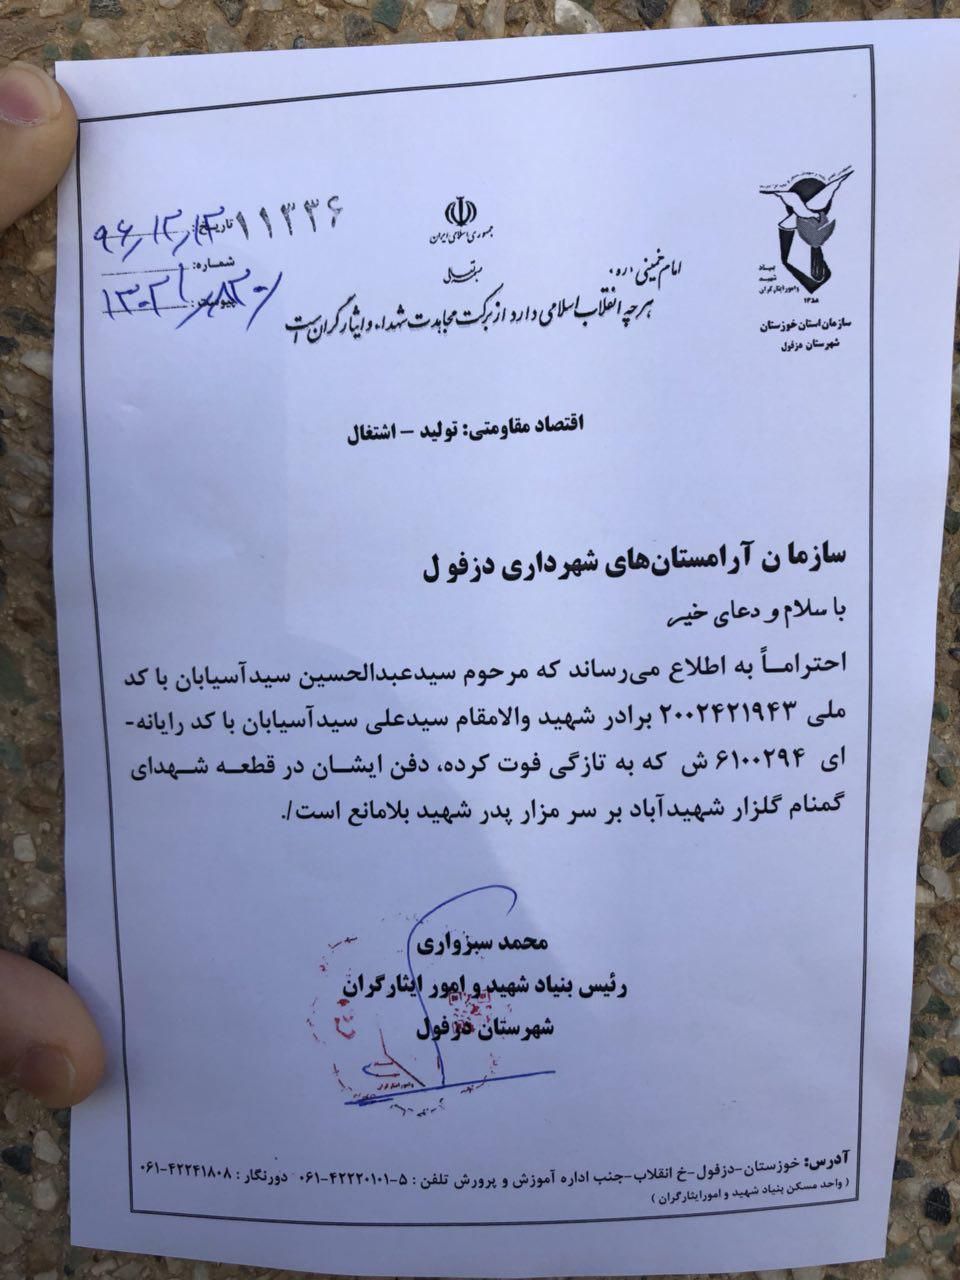 اقدام شرم آور افراطیون در دزفول: حمله شبانه به قبر پدر شهید با ادعای دفاع از شهدا !